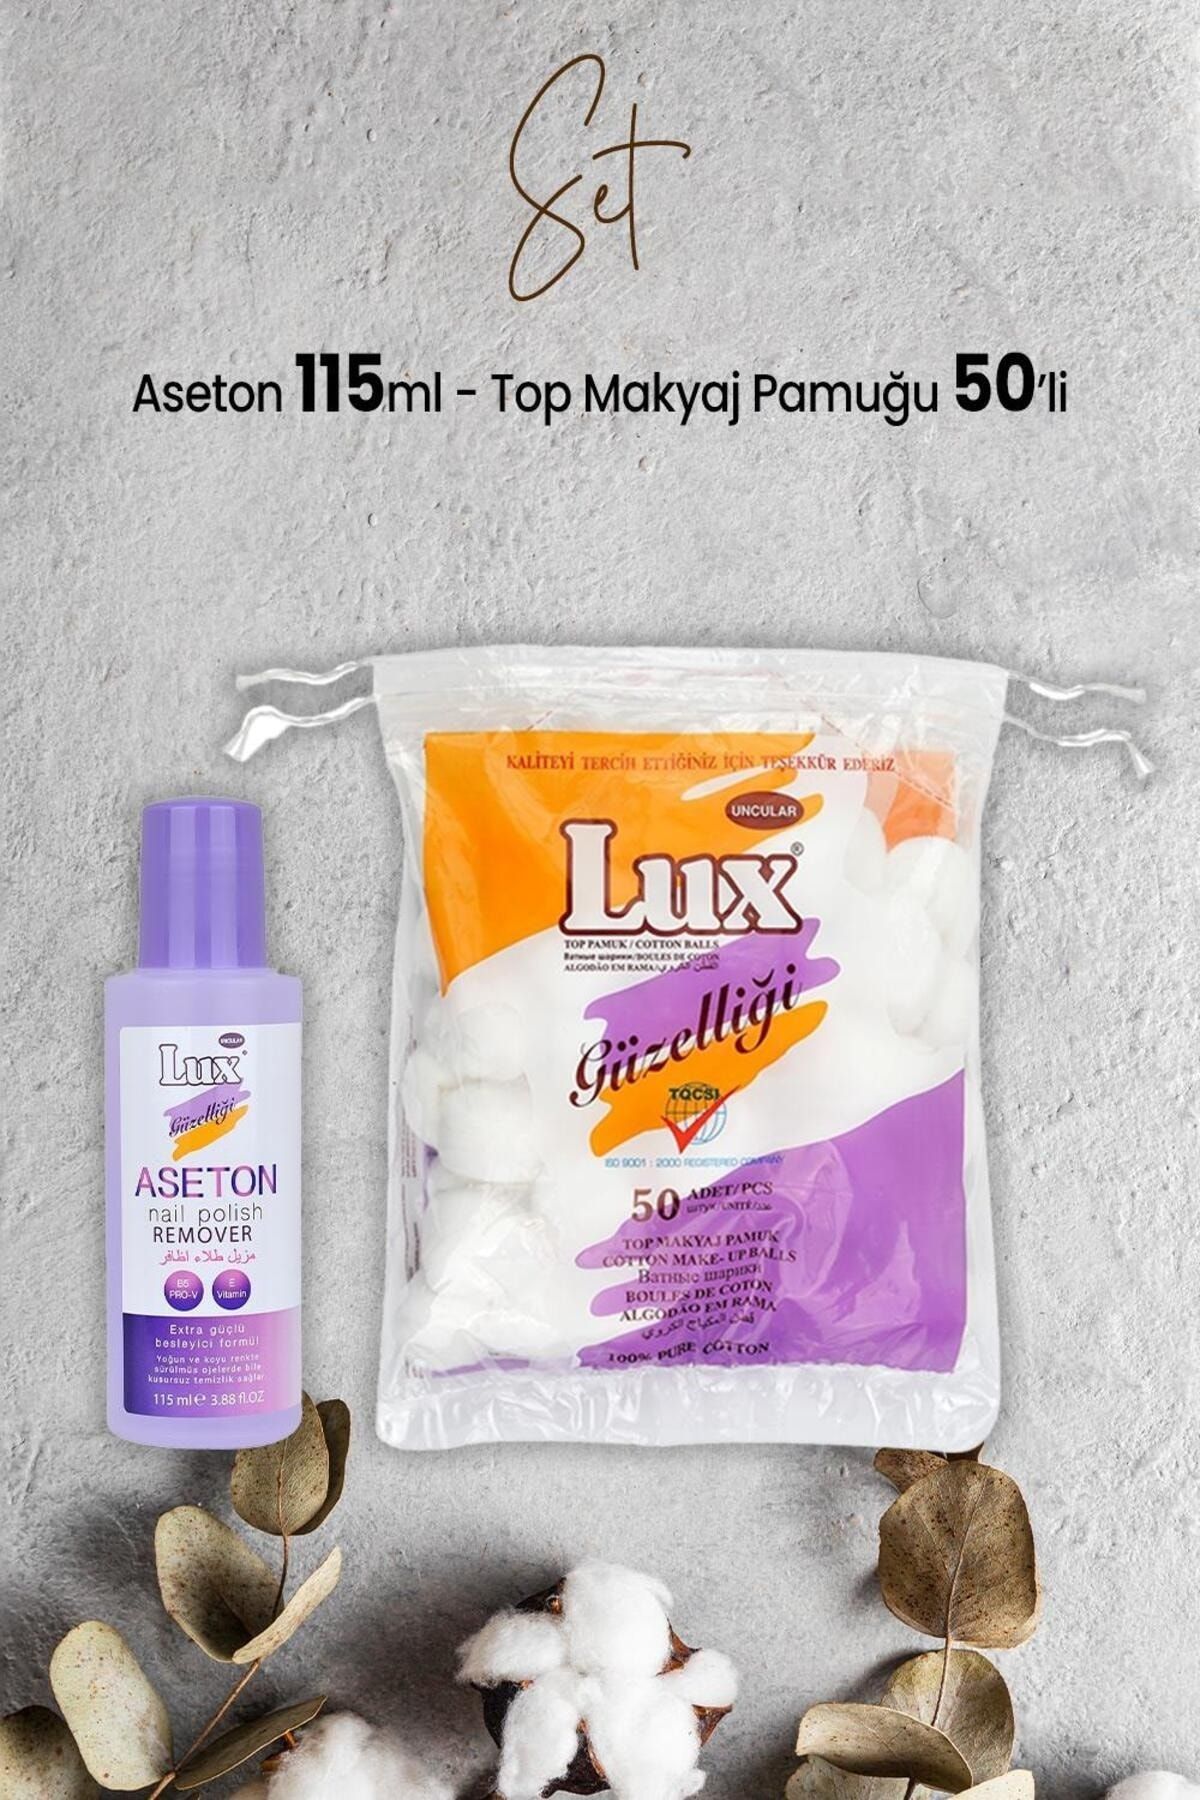 LUX Aseton 115 ml ve Top Makyaj Pamuğu 50'li